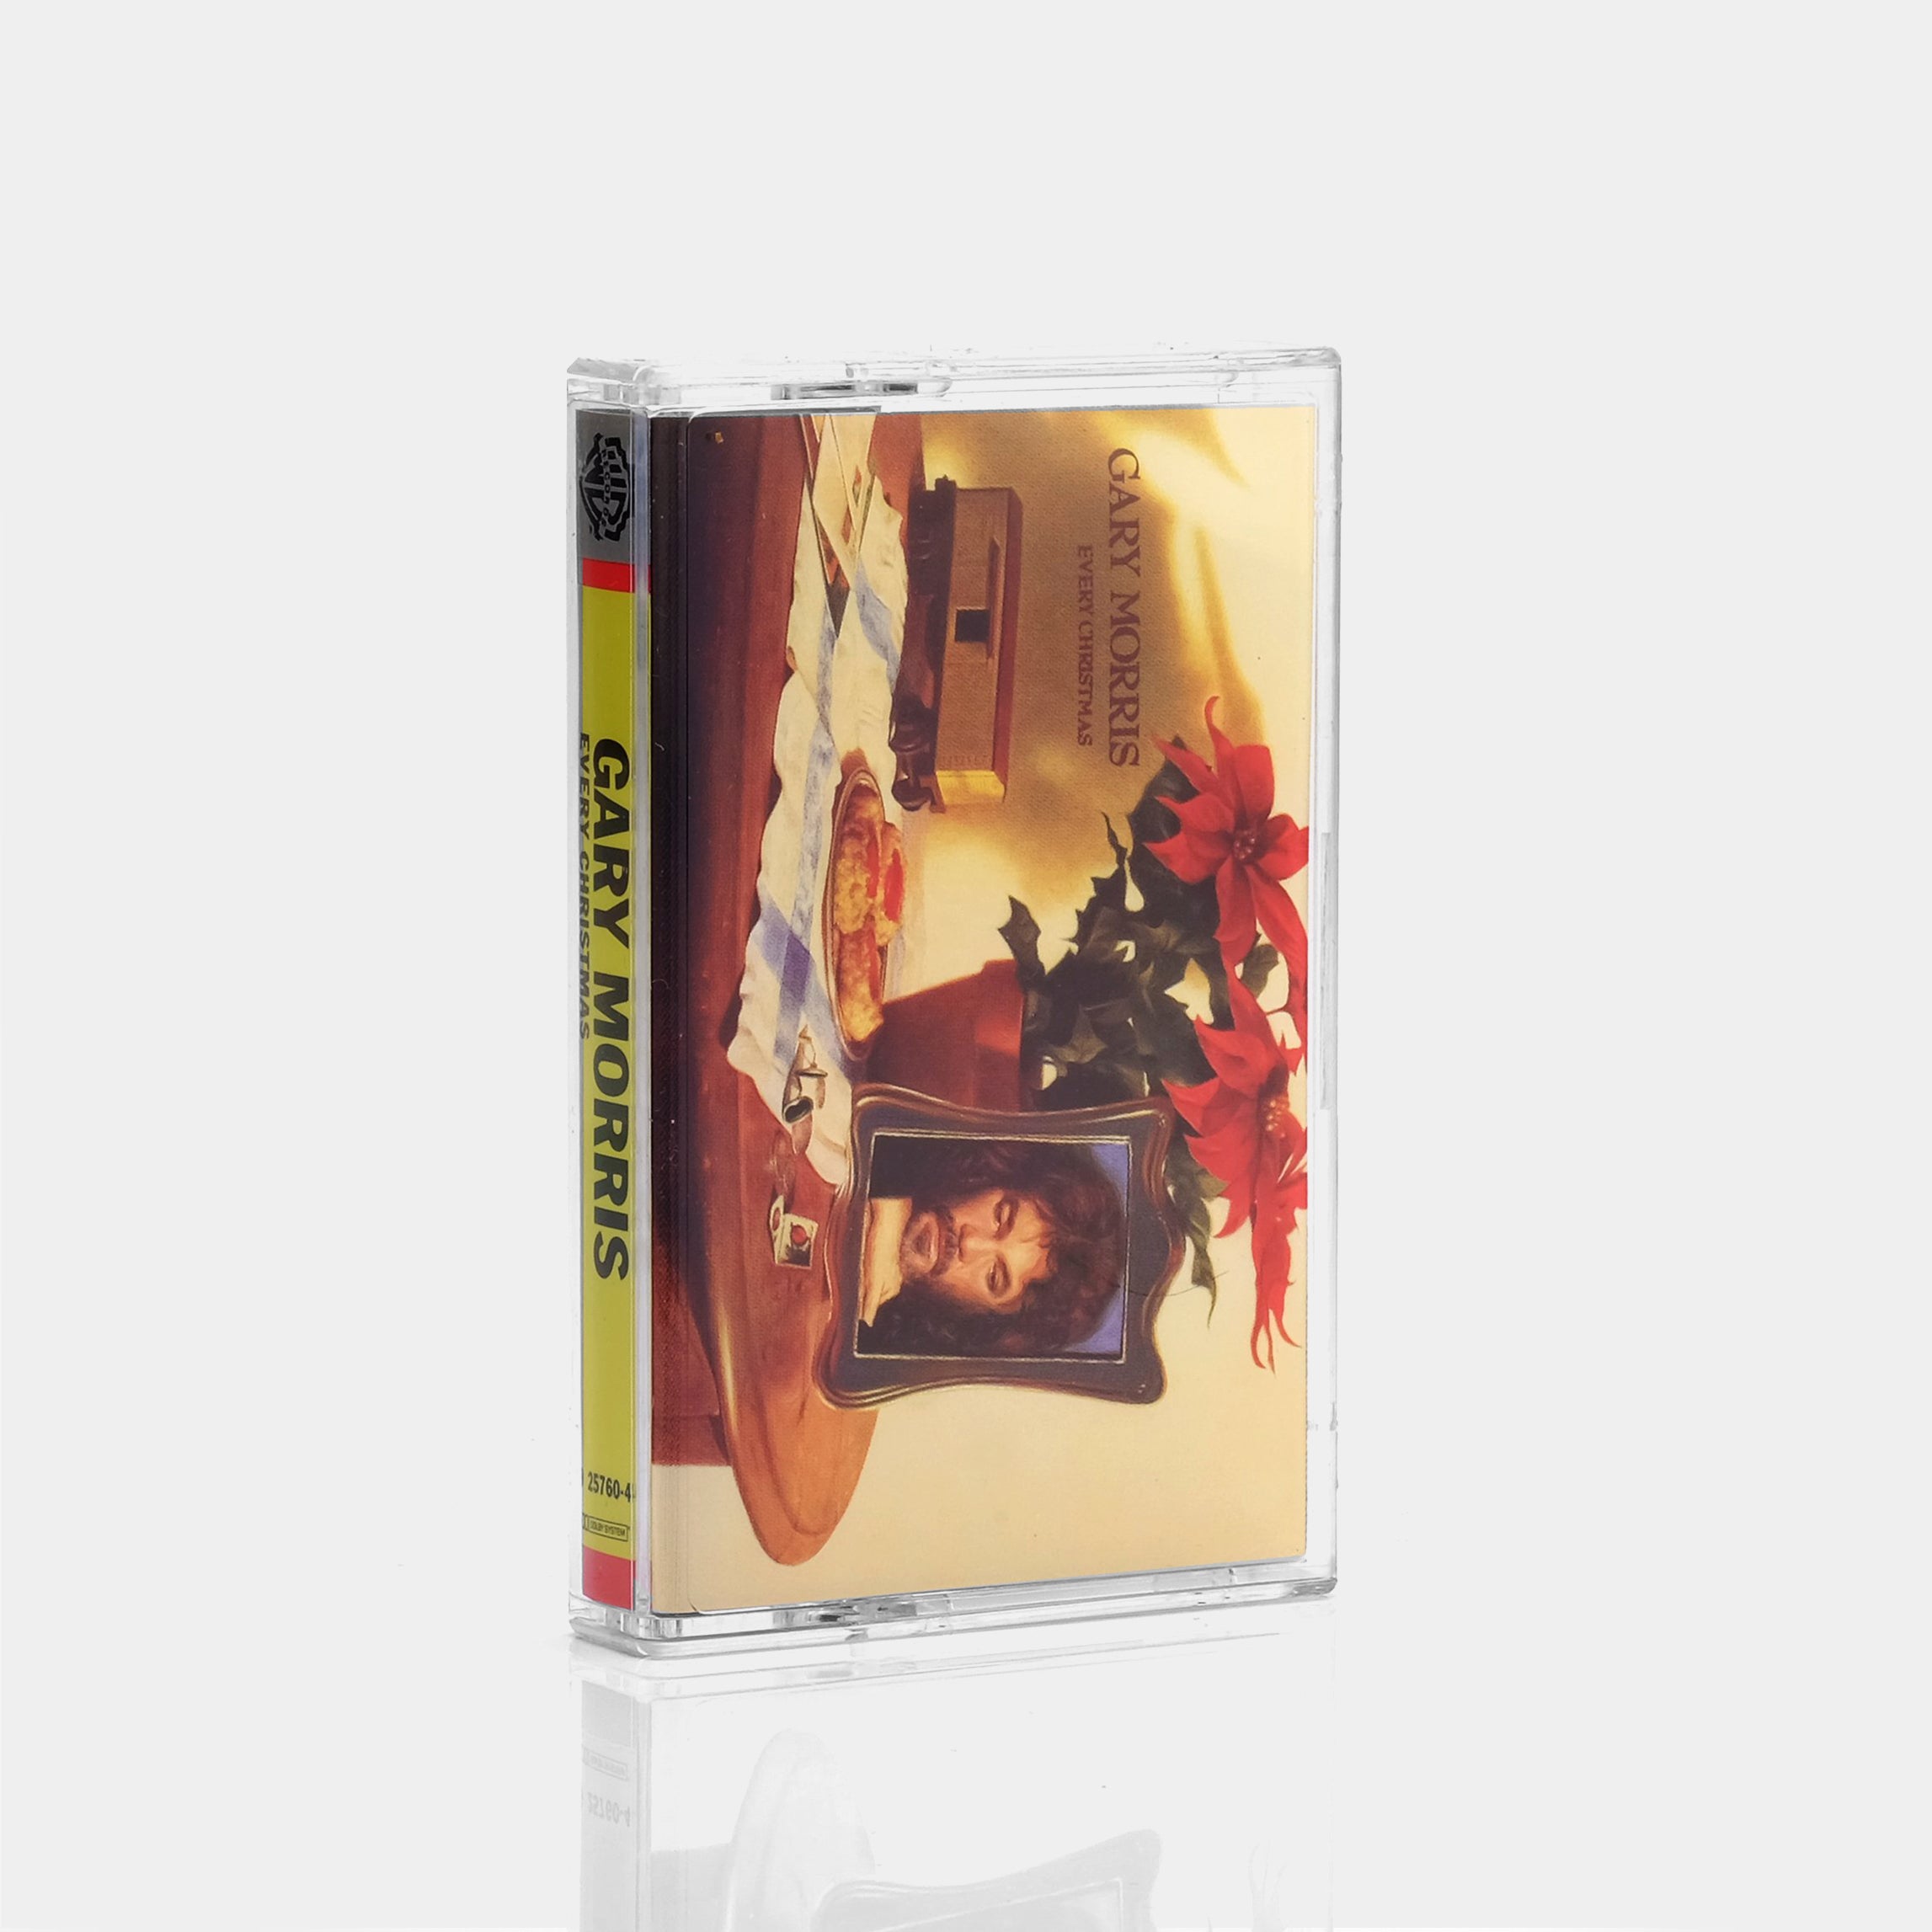 Gary Morris - Every Christmas Cassette Tape